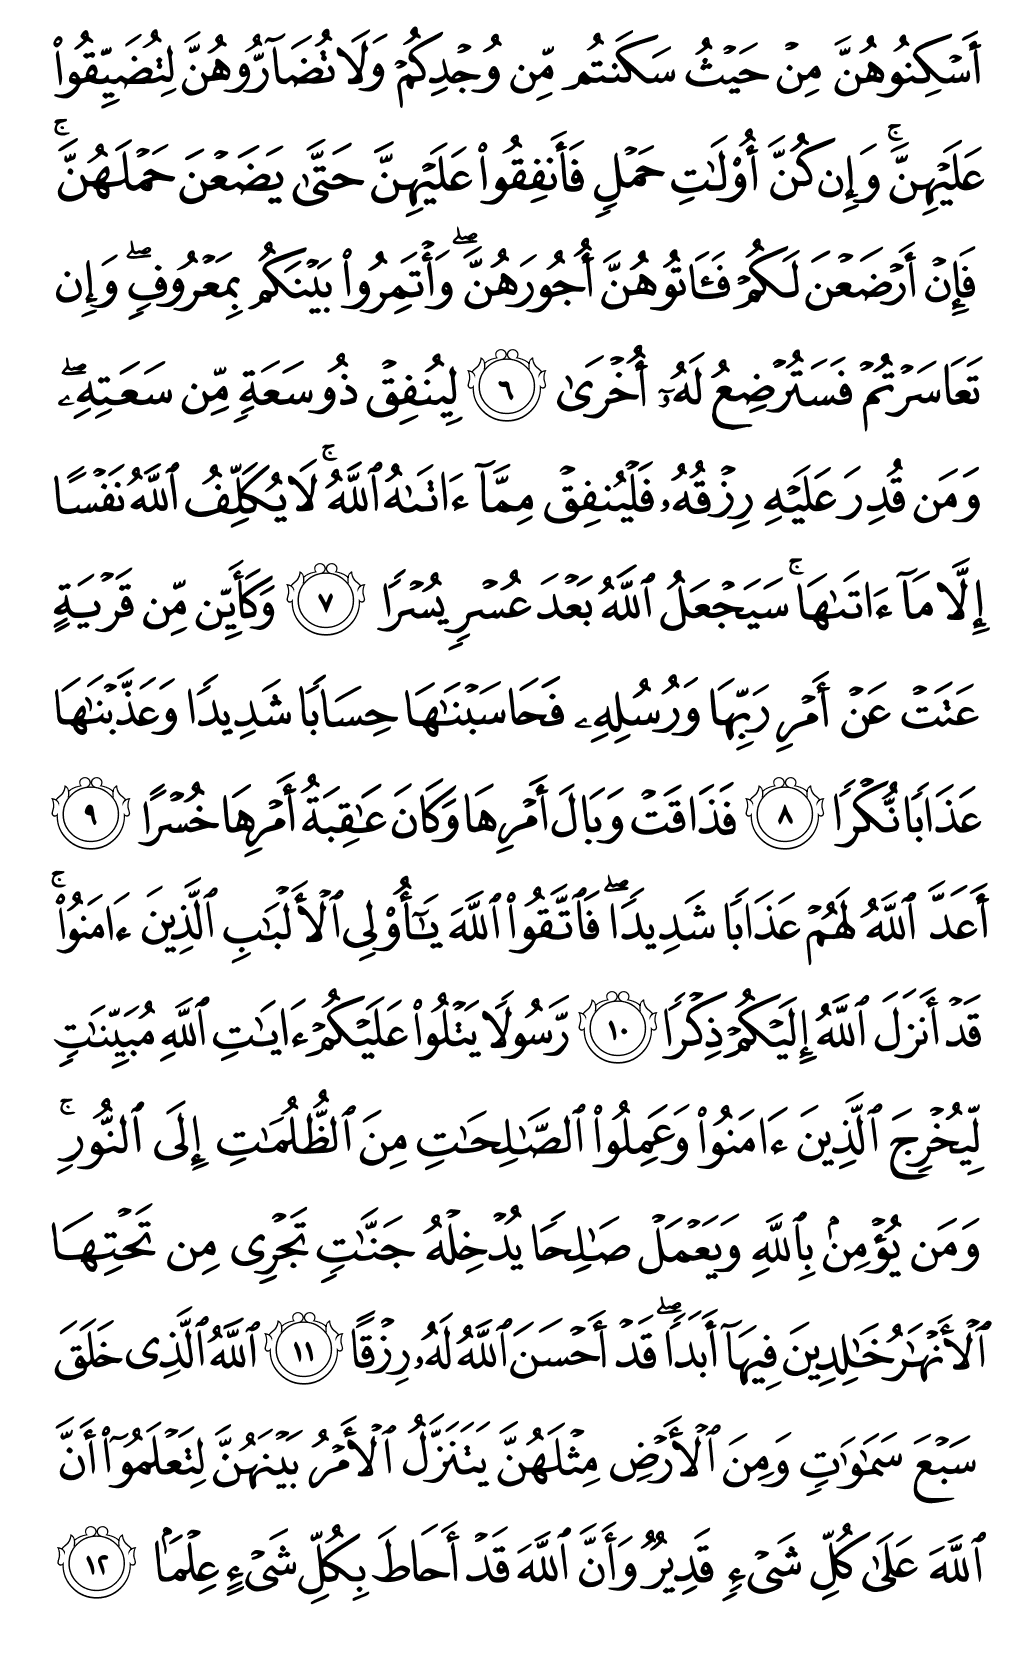 الصفحة رقم 559 من القرآن الكريم